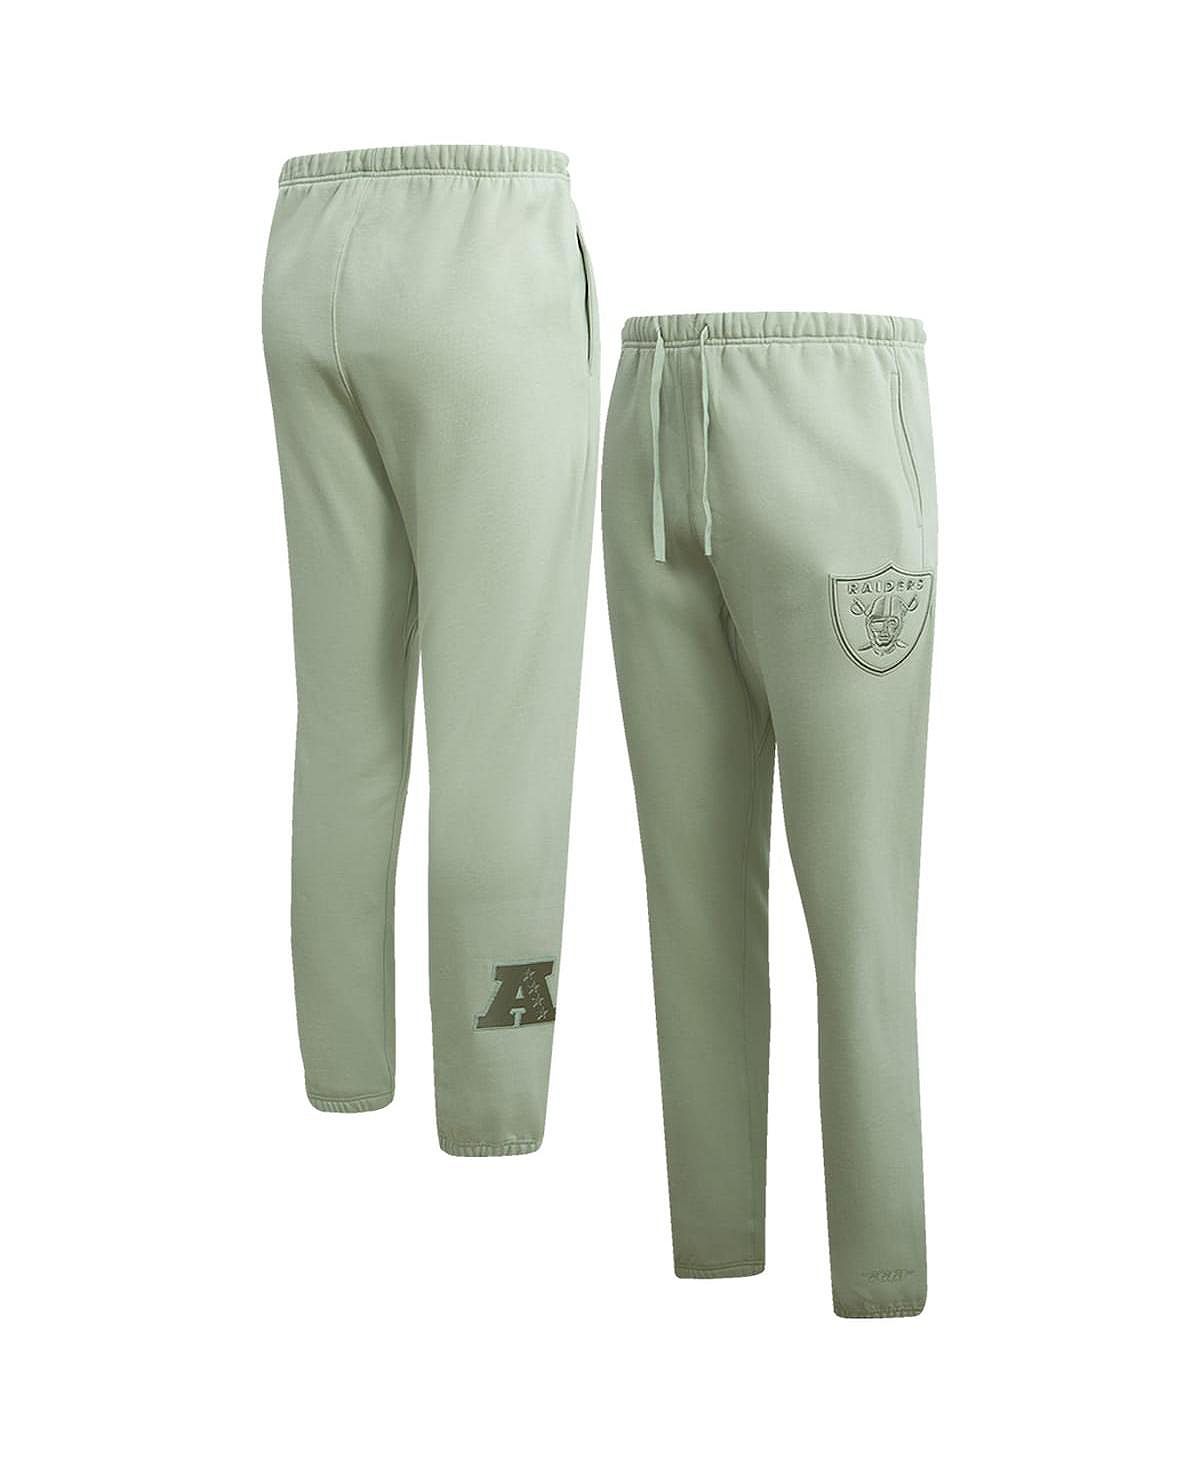 Мужские светло-зеленые флисовые спортивные штаны нейтрального цвета Las Vegas Raiders Pro Standard кроссовки thehoffbrand las vegas multicolor